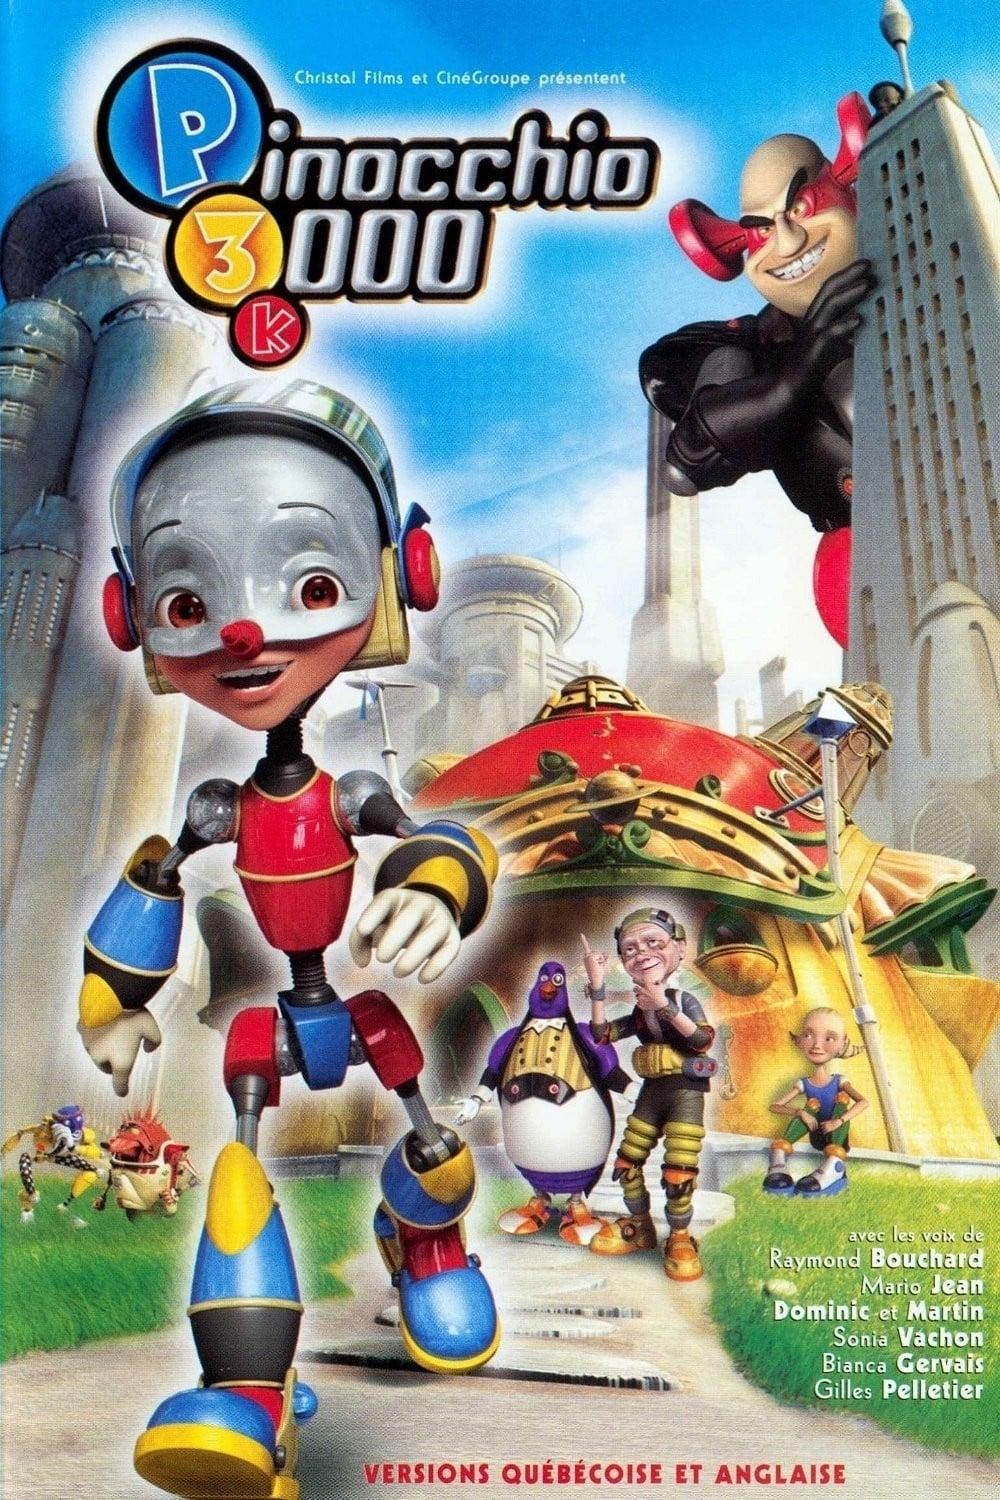 Pinocchio le robot est-il disponible sur Netflix ou autre ?